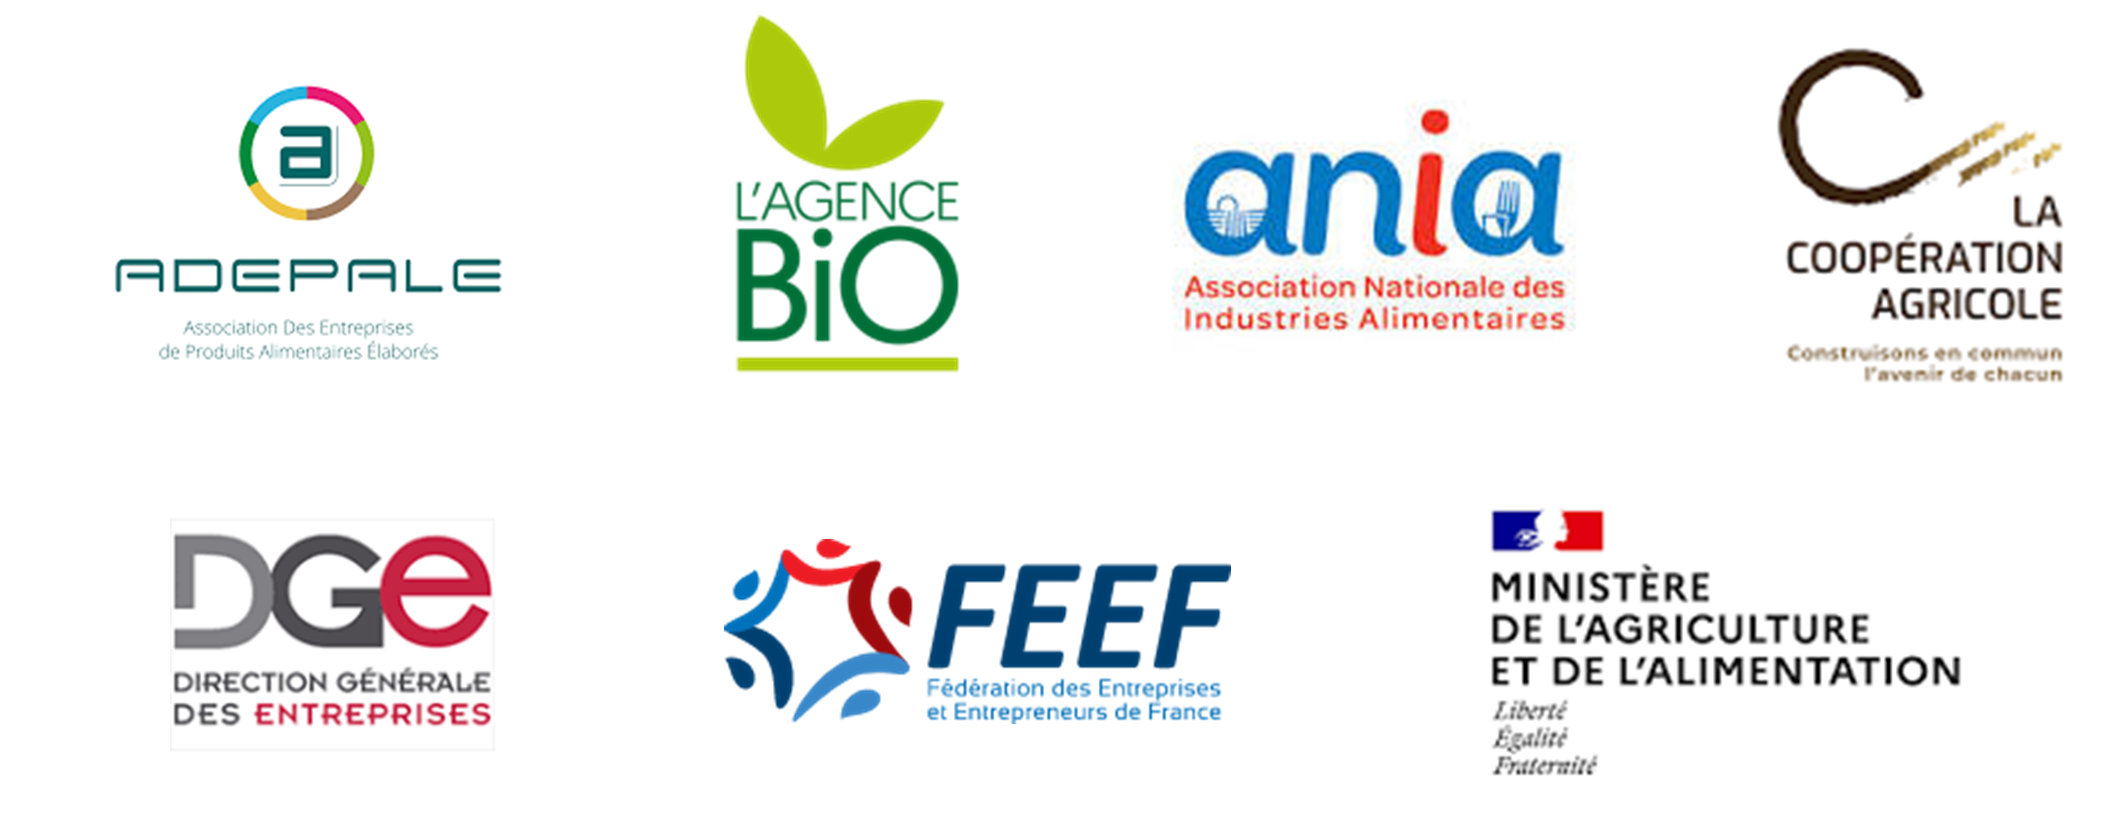 Partenaires accélérateur agroalimentaire : Adepale, l'Agence bio, Ania, Coopération agricole, DGE, FEEF, Ministère de l'agriculture et de l'alimentation